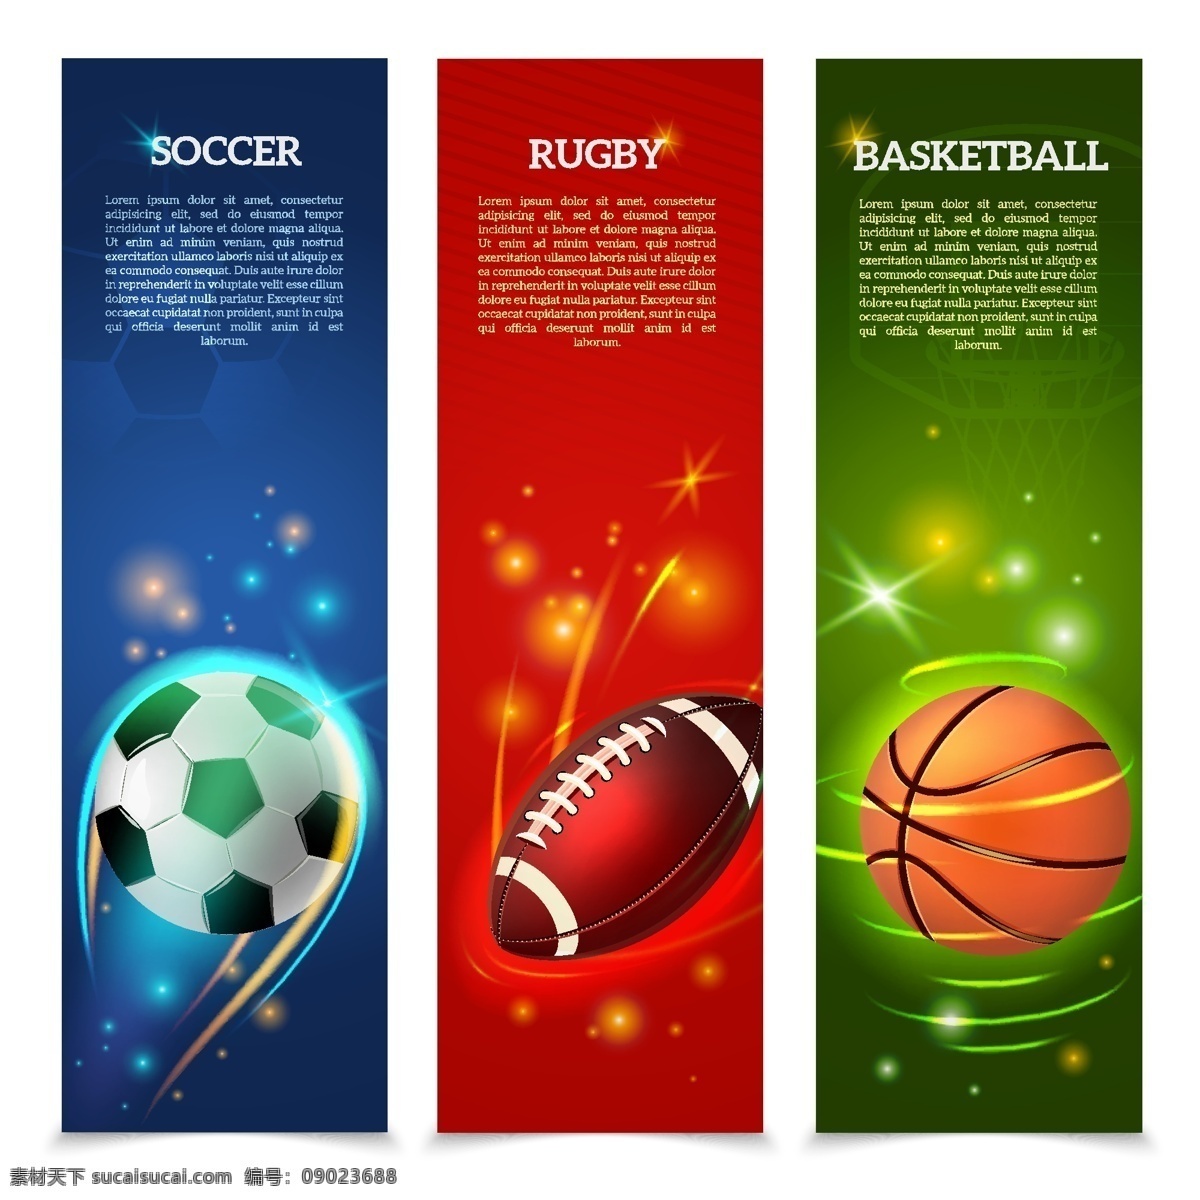 体育横幅 体育用品横幅 体育用品广告 体育广告 足球横幅 橄榄球横幅 篮球横幅 足球 橄榄球 篮球 体育运动 条幅 横幅 卡片 展板